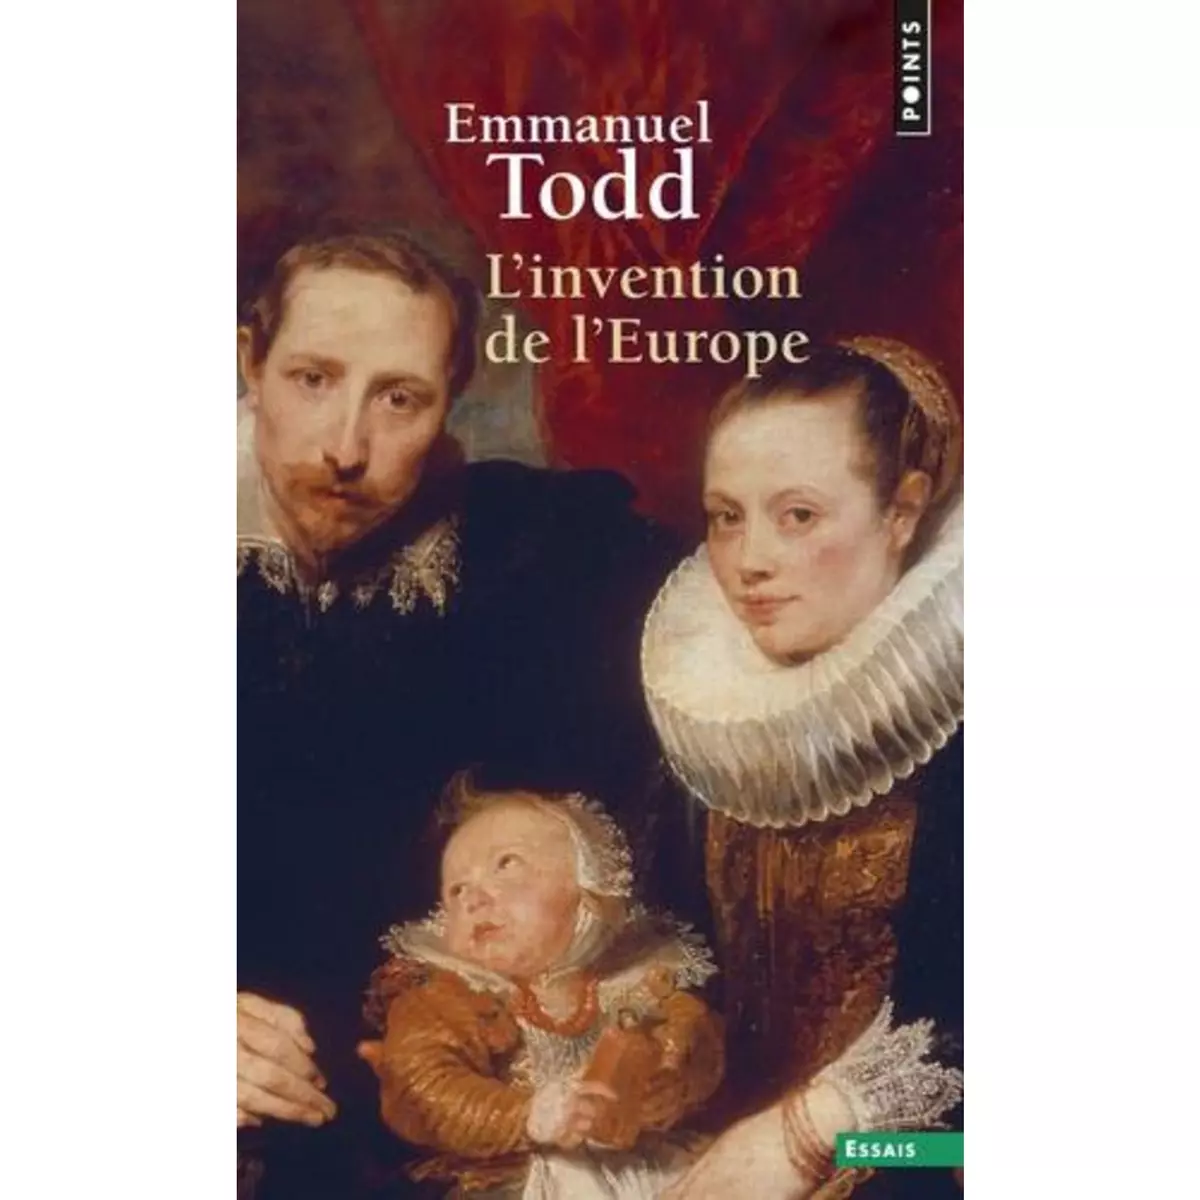  L'INVENTION DE L'EUROPE, Todd Emmanuel